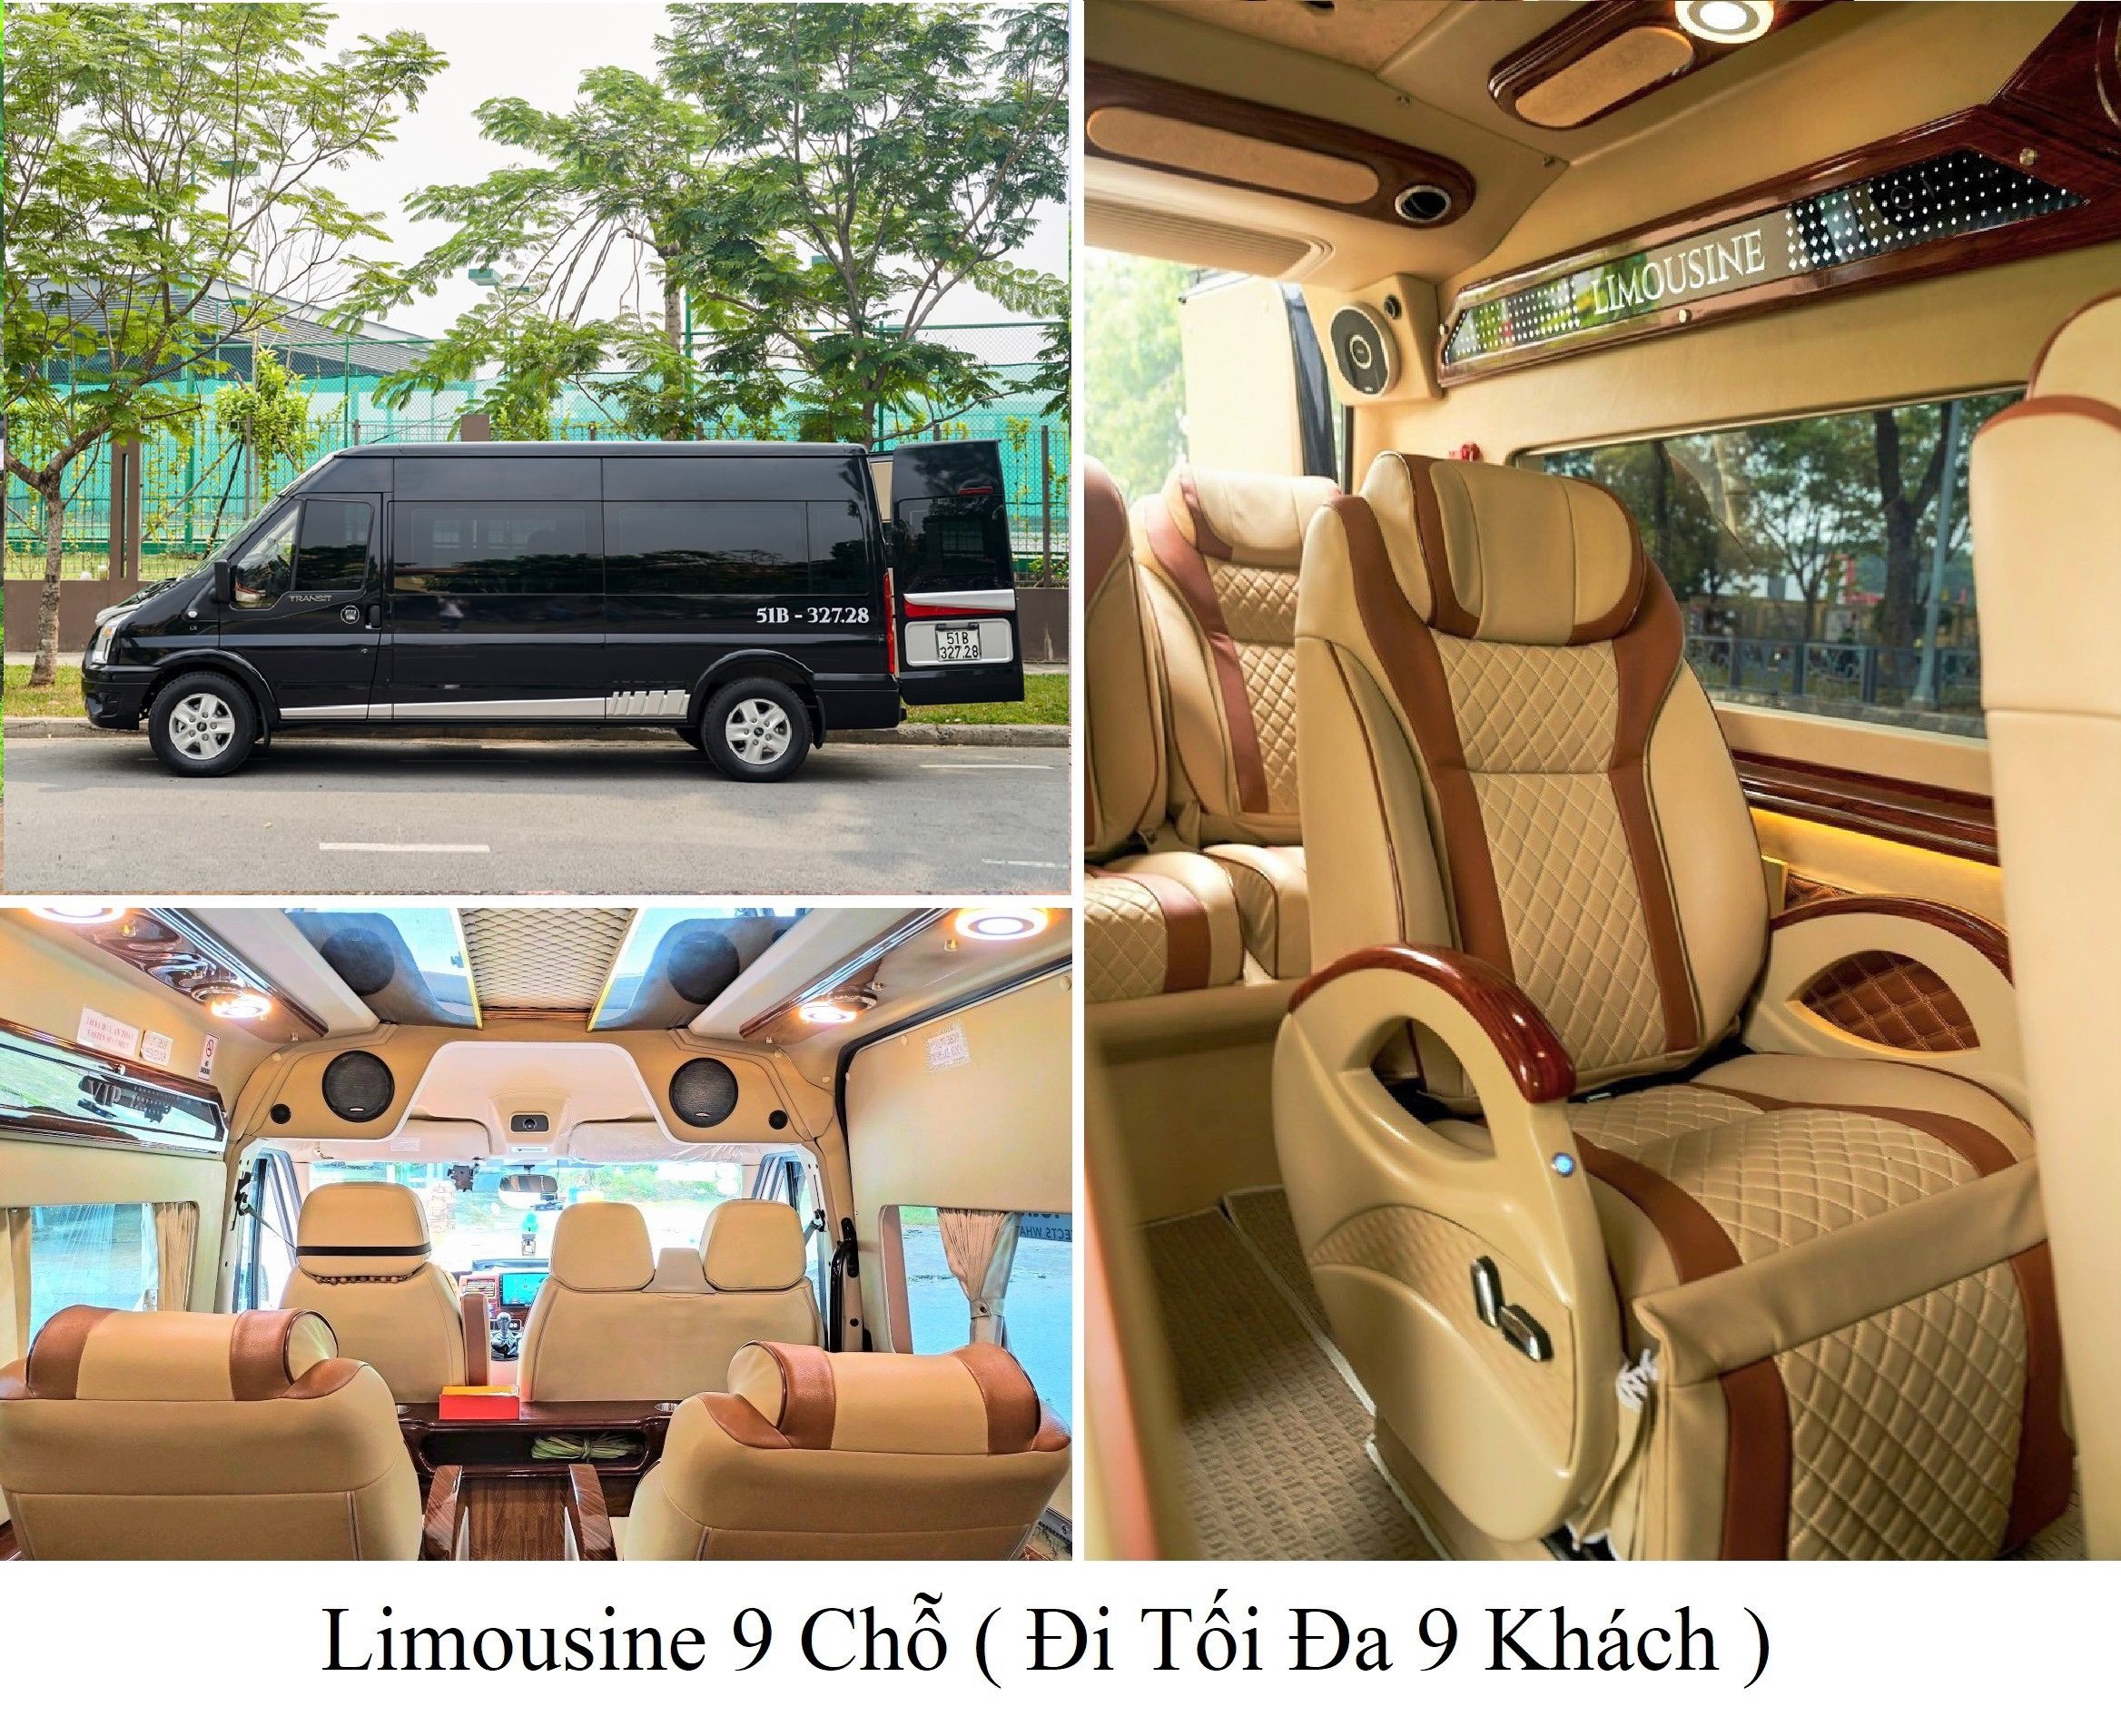 limousine 9 cho di toi da 9 khach.jpg (1.10 MB)